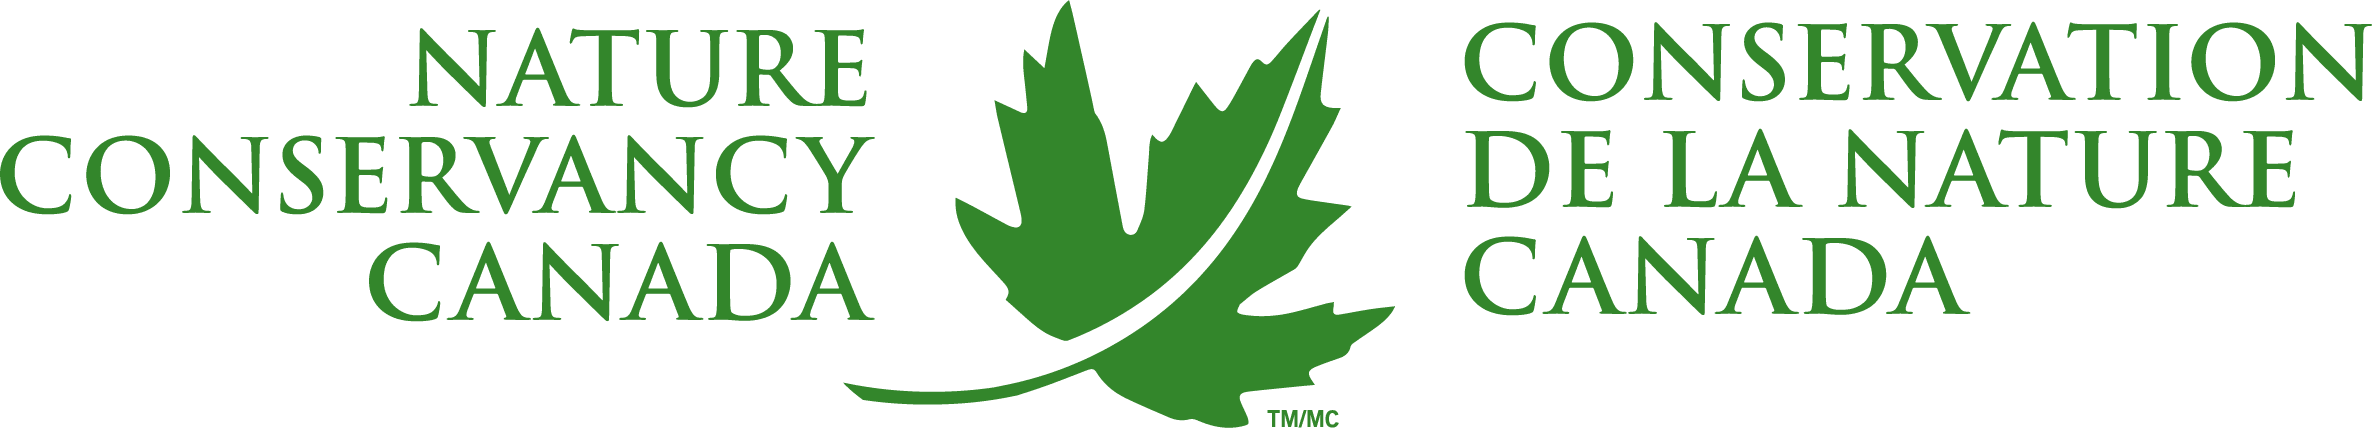 green NCC logo with maple leaf